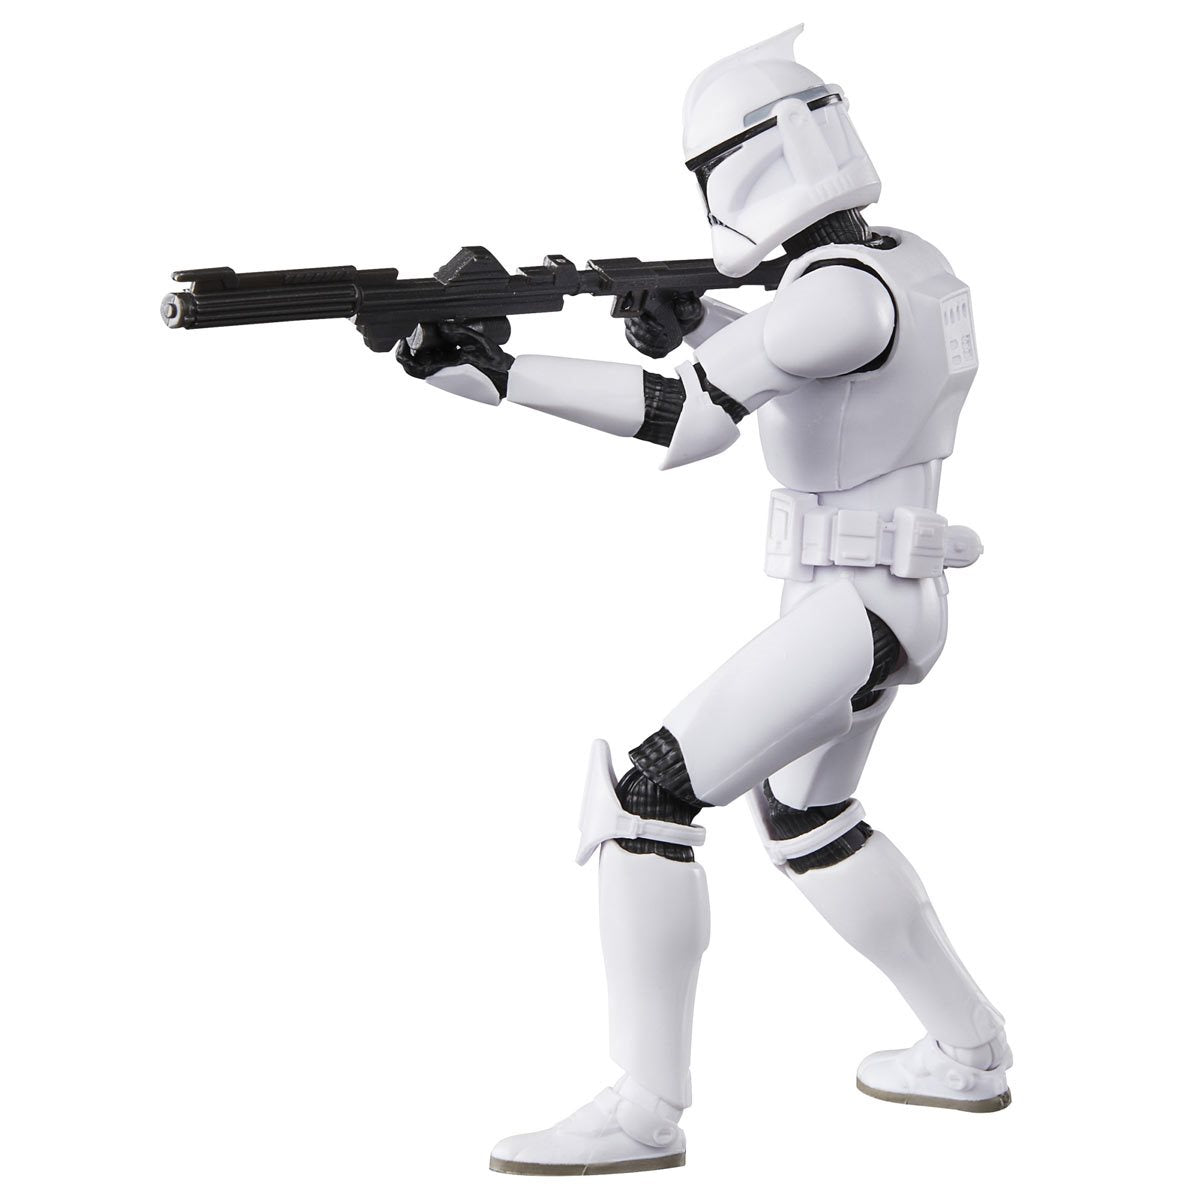 PREVENTA - Phase I Clone Trooper, Star Wars The Black Series - Precio $649